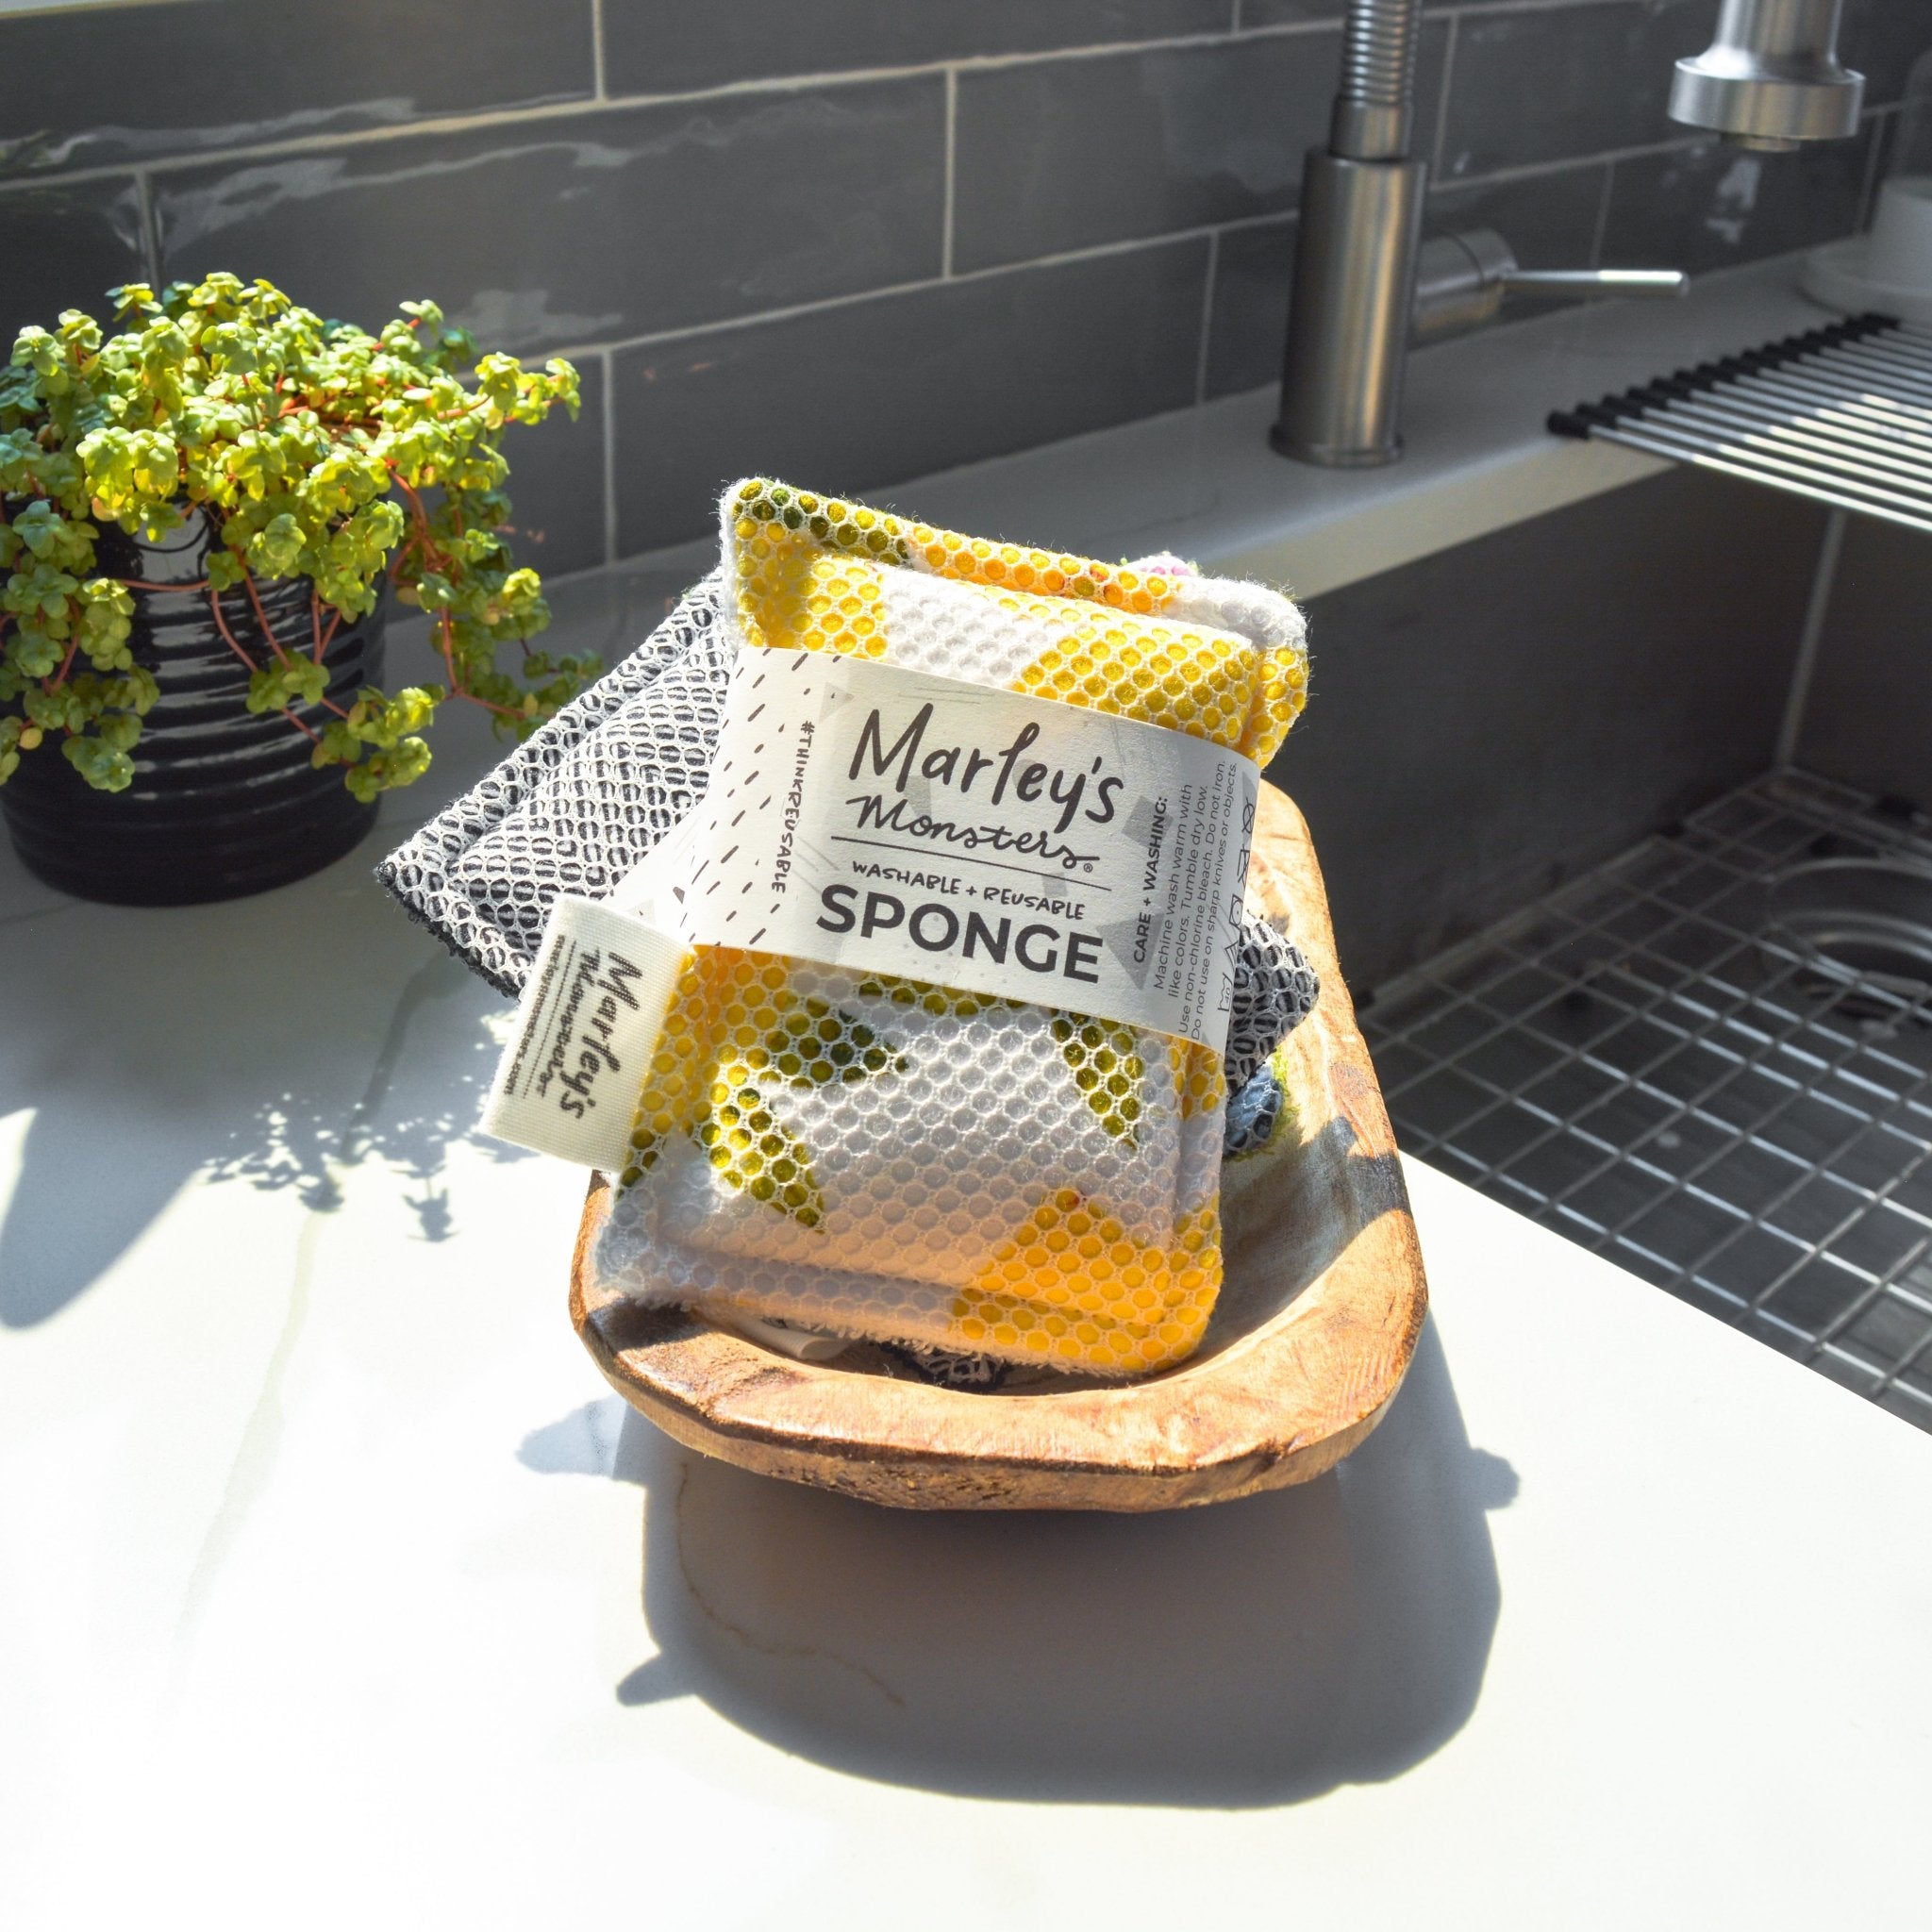 Reusable Kitchen Sponges